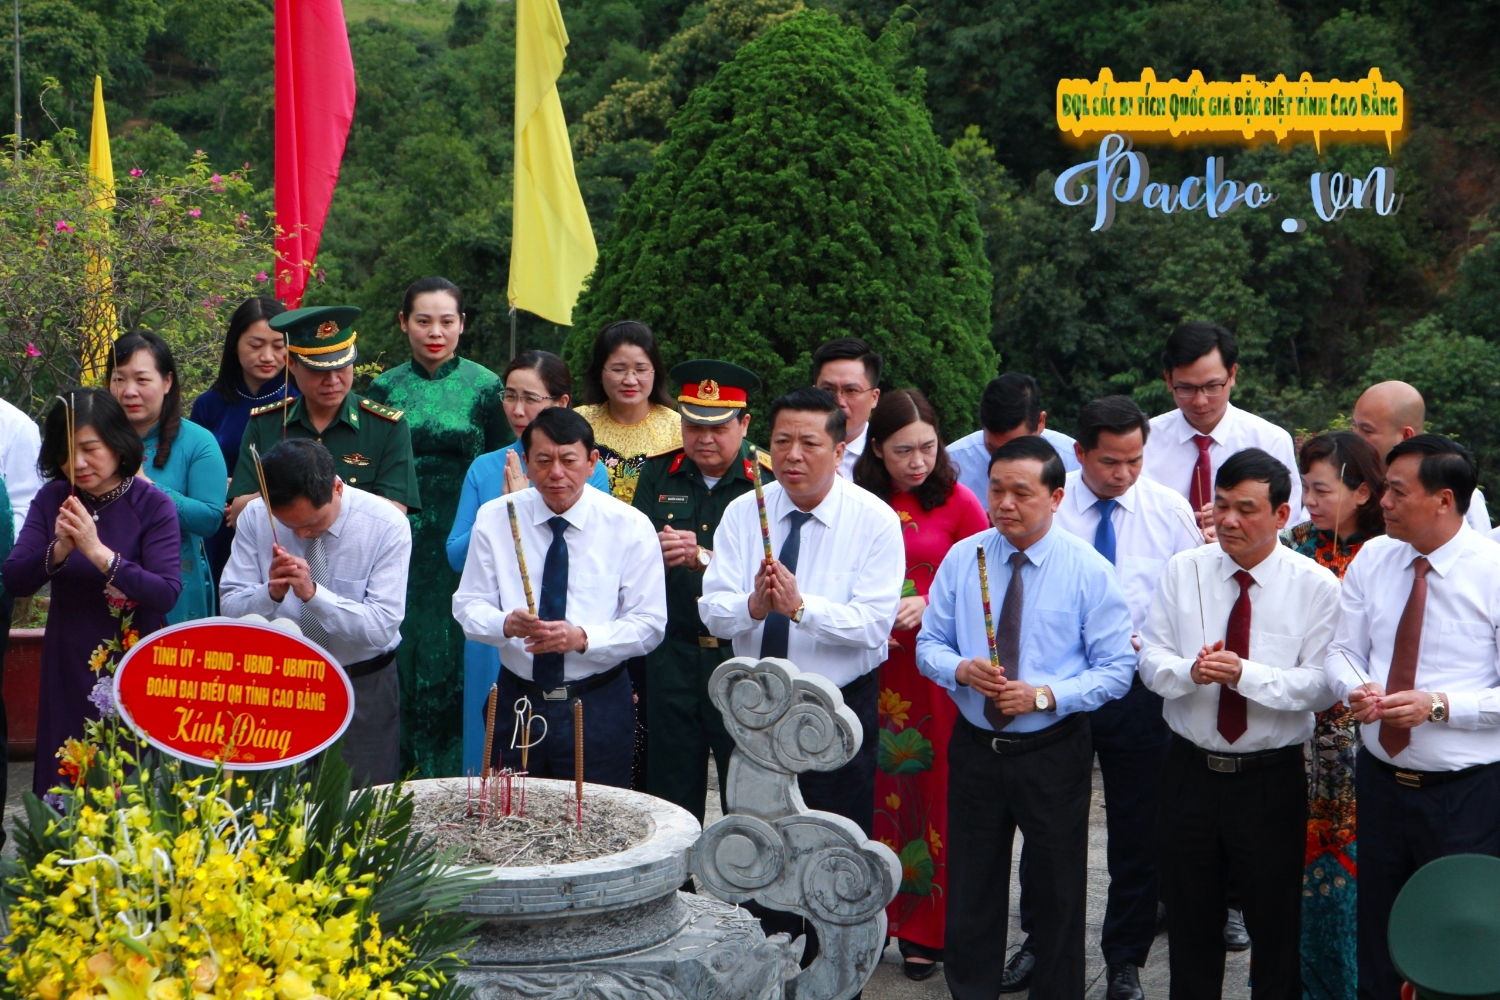 Đoàn đại biểu Đảng bộ và nhân dân các dân tộc tỉnh Cao Bằng dâng hương, dâng hoa kỷ niệm 132 năm Ngày sinh Chủ tịch Hồ Chí Minh